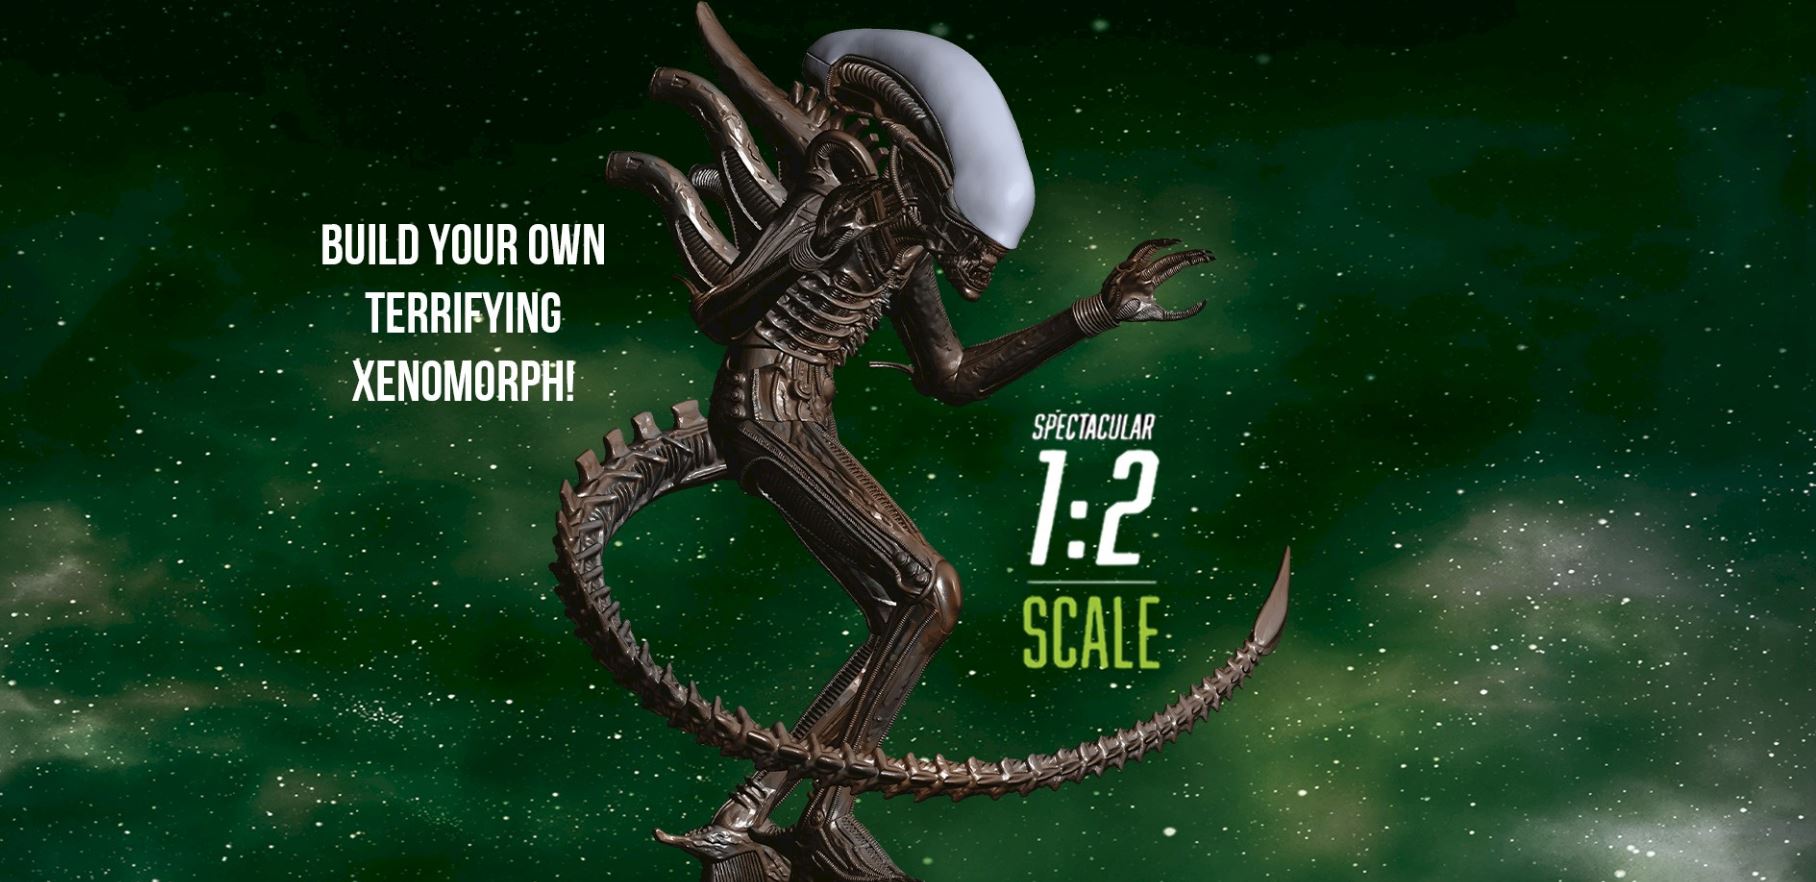 Loja lança réplica de alien gigante em tamanho quase real